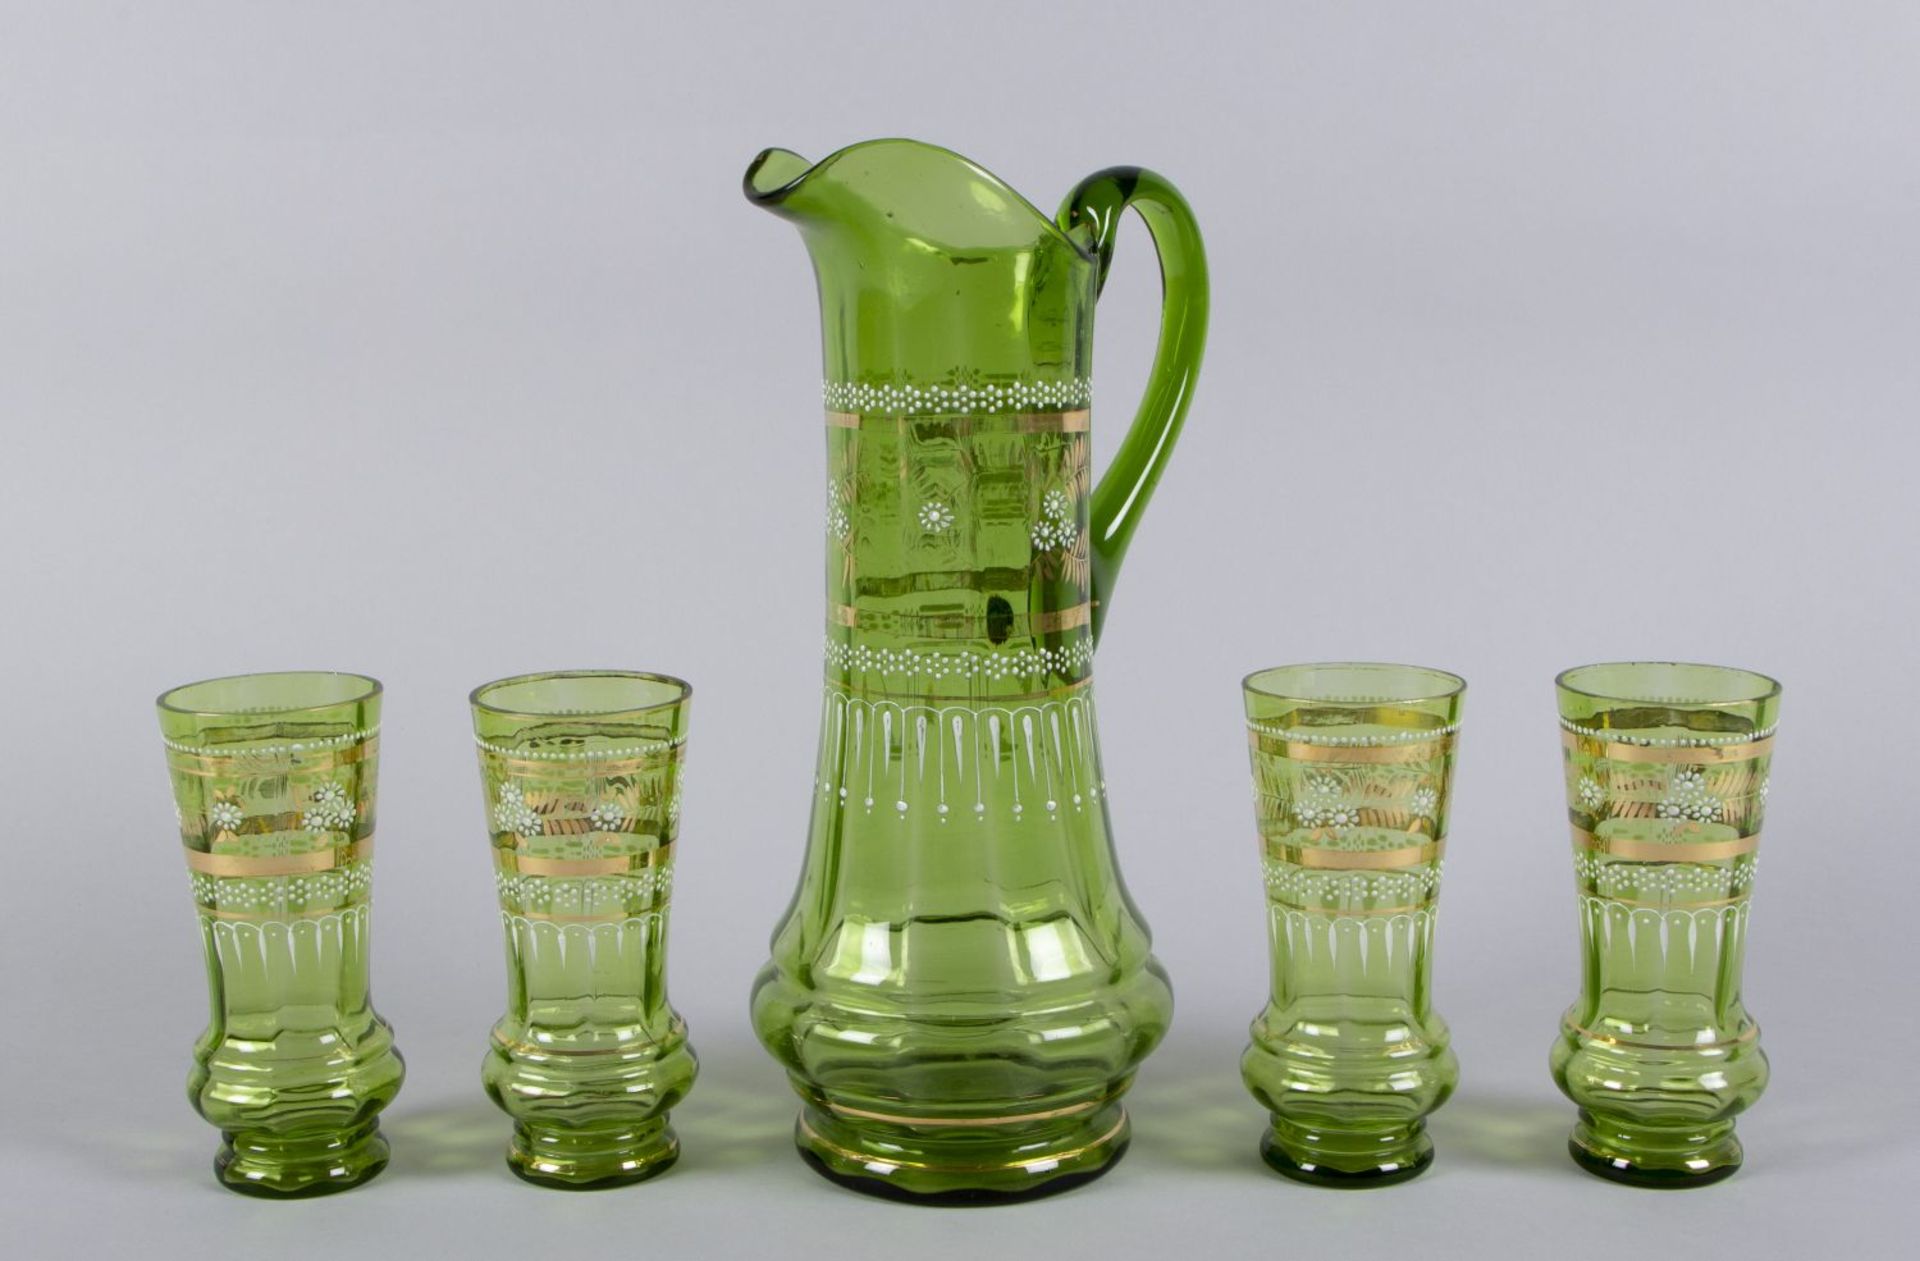 Saftkanne mit 4 Gläsern Grünes Glas.